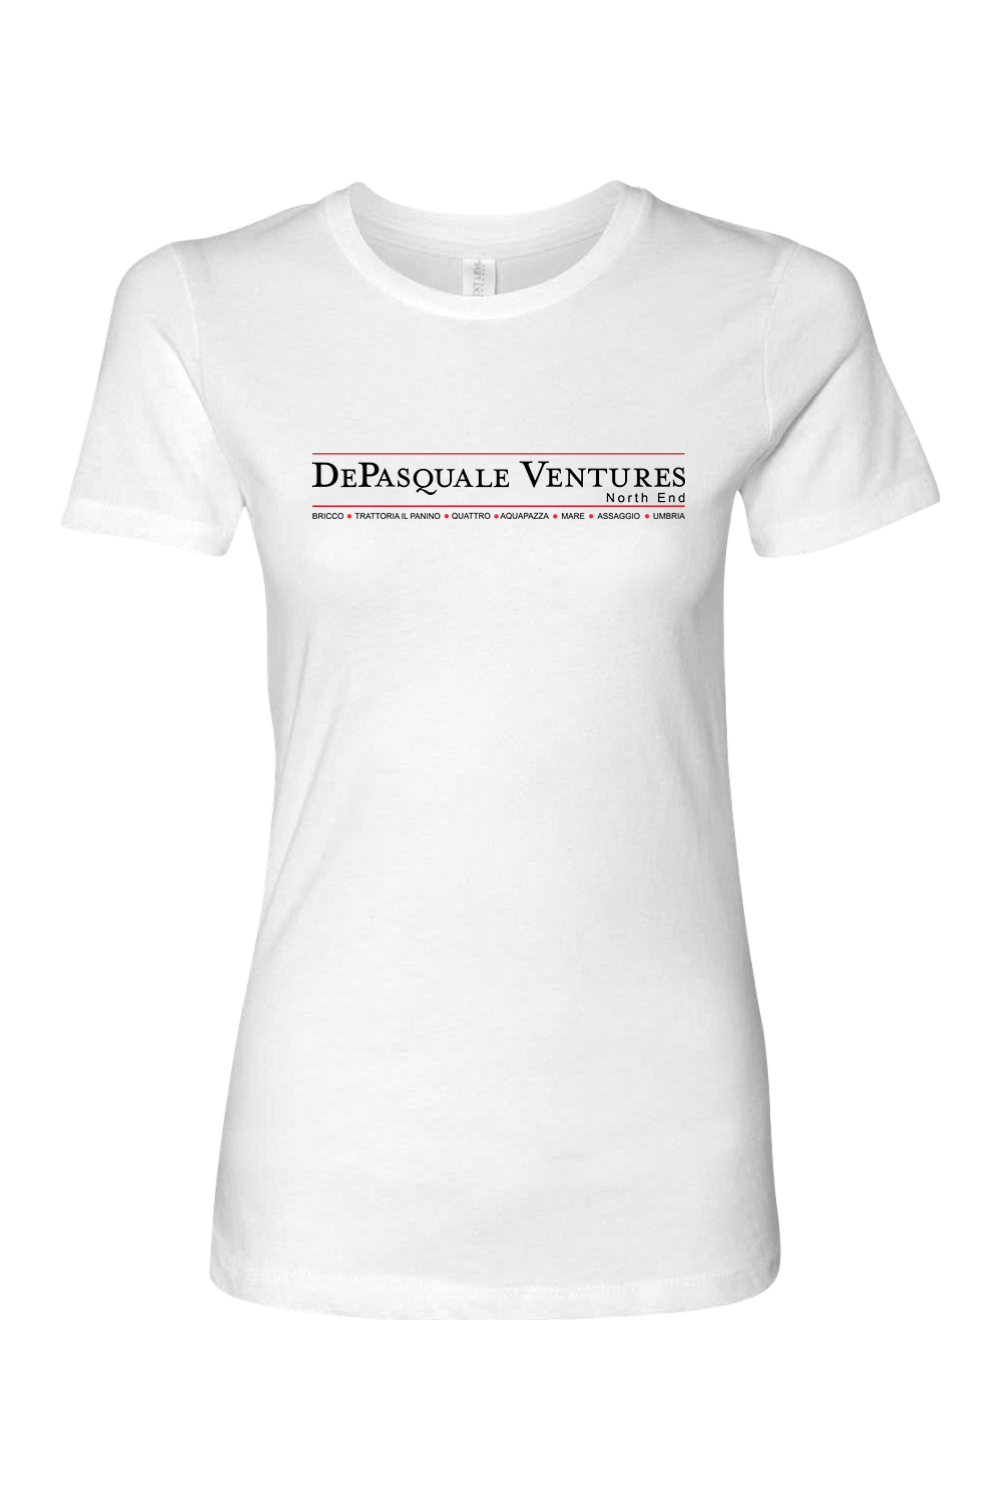 DePasquale Ventures Women's T-Shirt